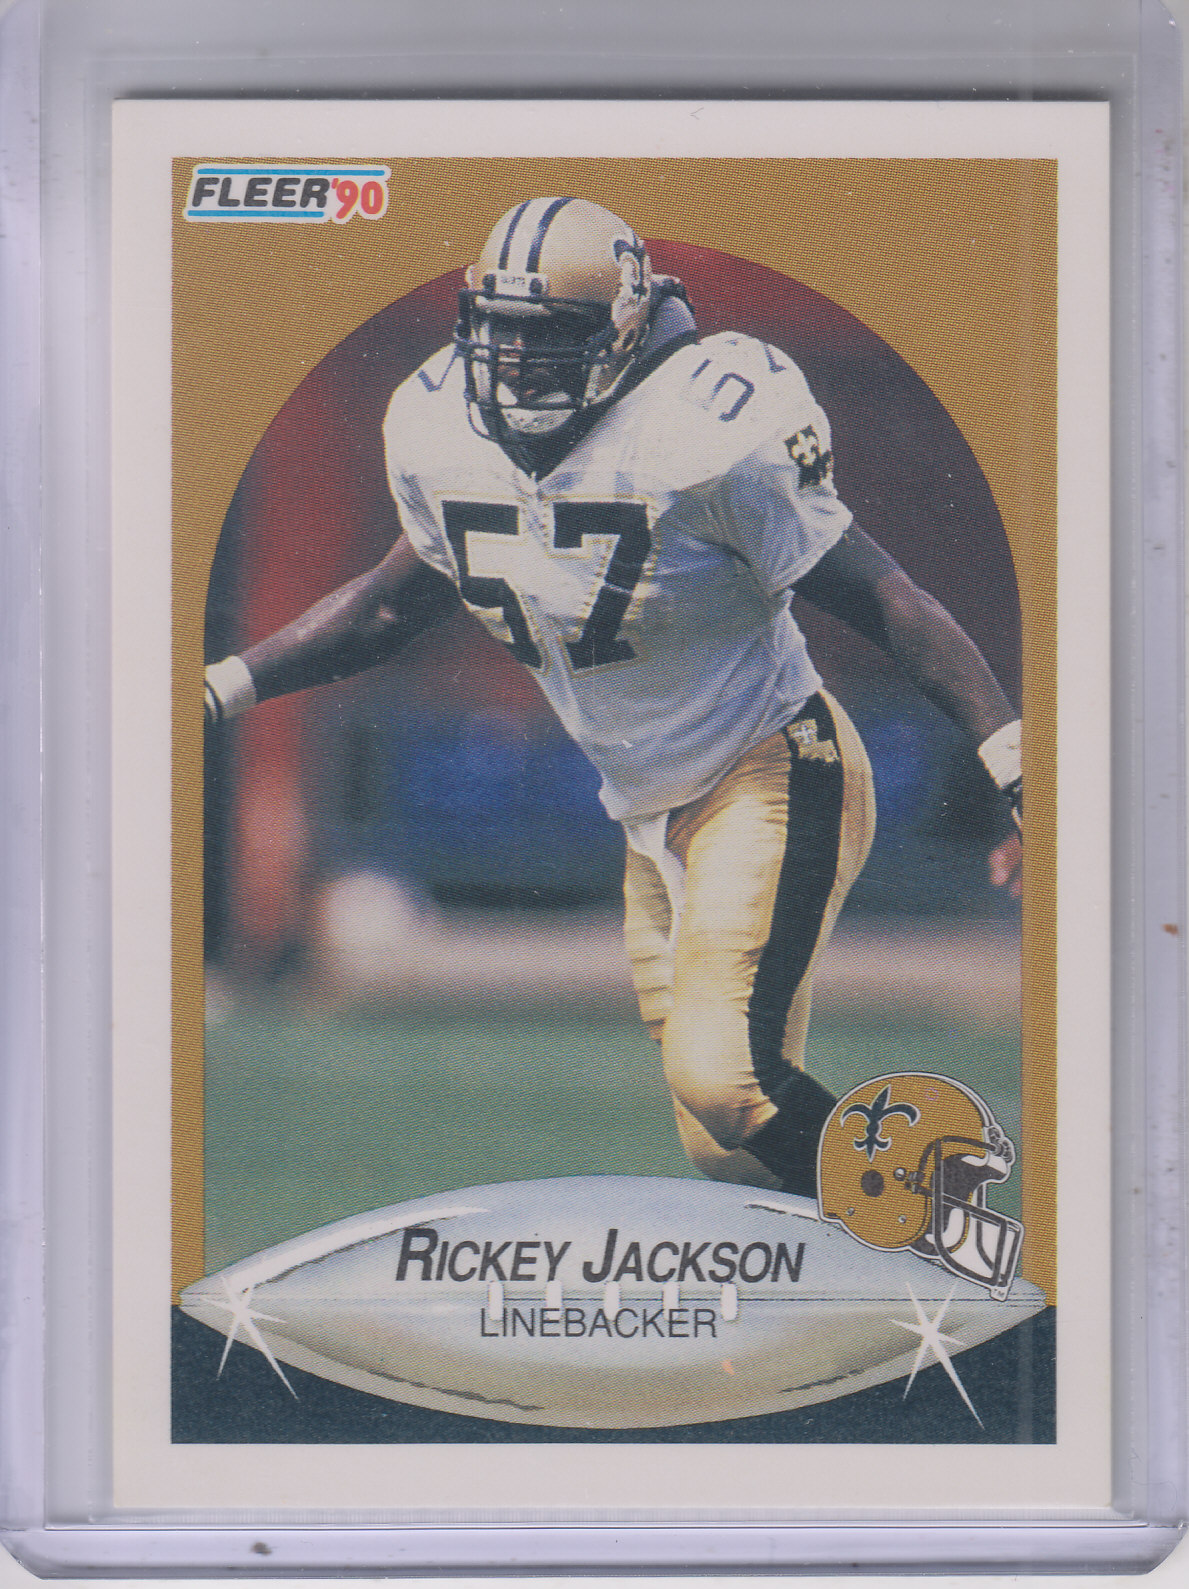 1990 Fleer #190 Rickey Jackson